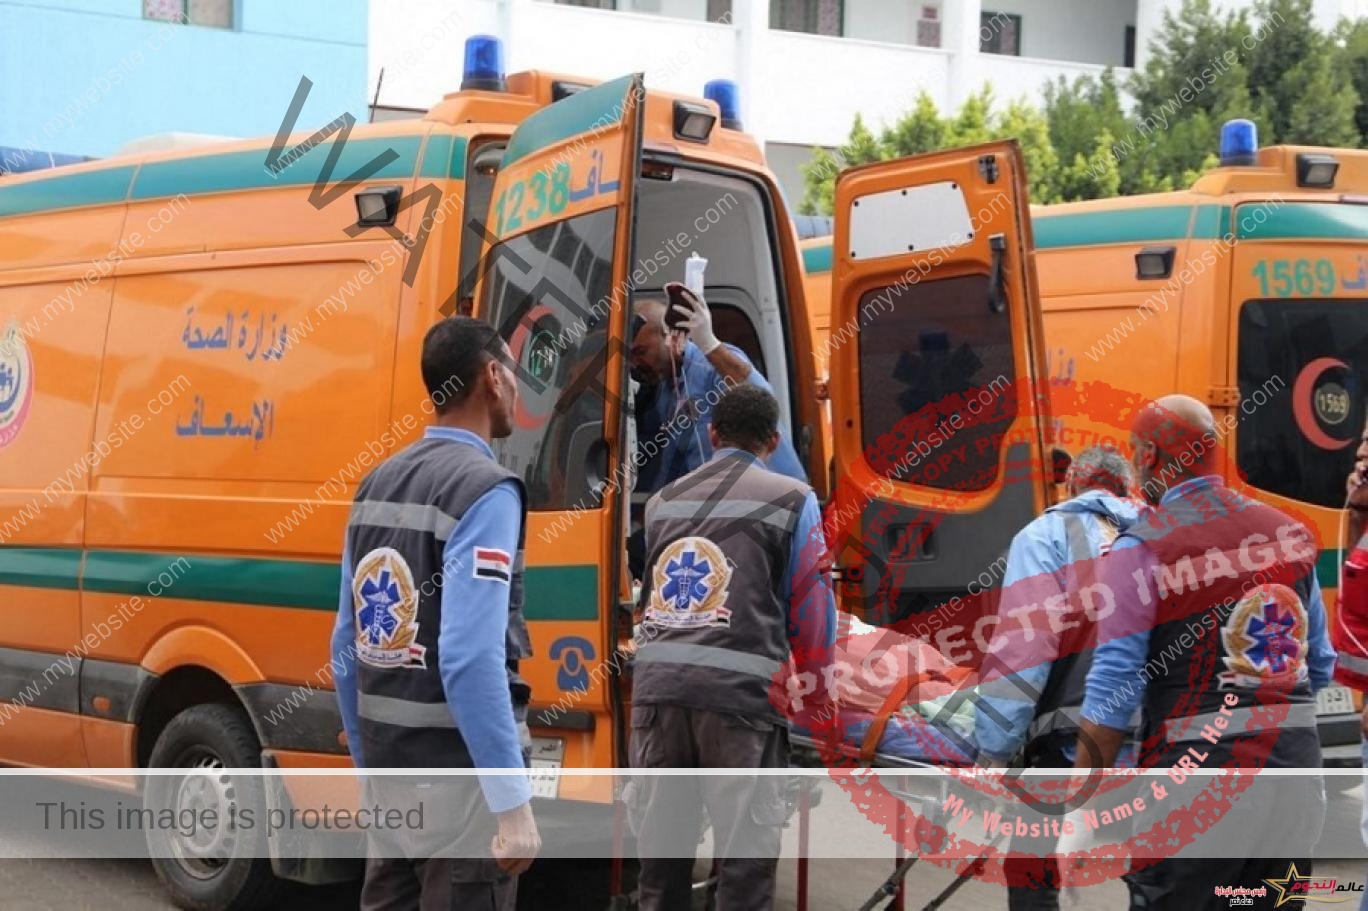 إصابة 4  أشخاص فى حادث سير على طريق العريش القنطرة الساحلي